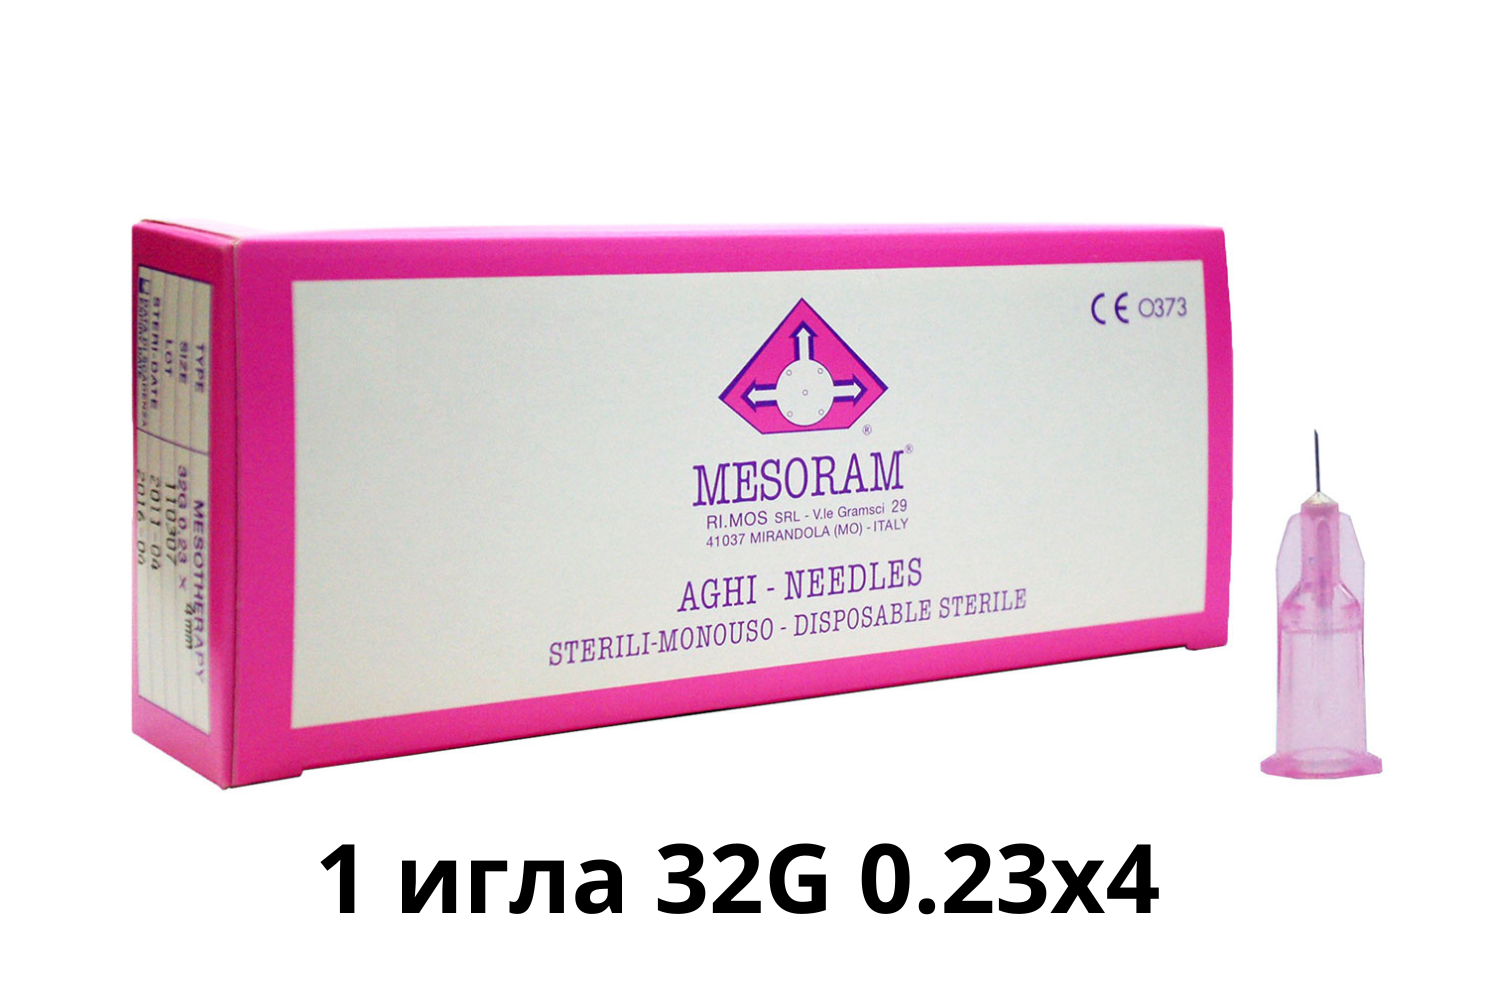 Игла медицинская инъекционная для мезотерапии (Мезоигла Mesoram) 32G 0.23x4, 1 шт, 712303 (Мезорам)